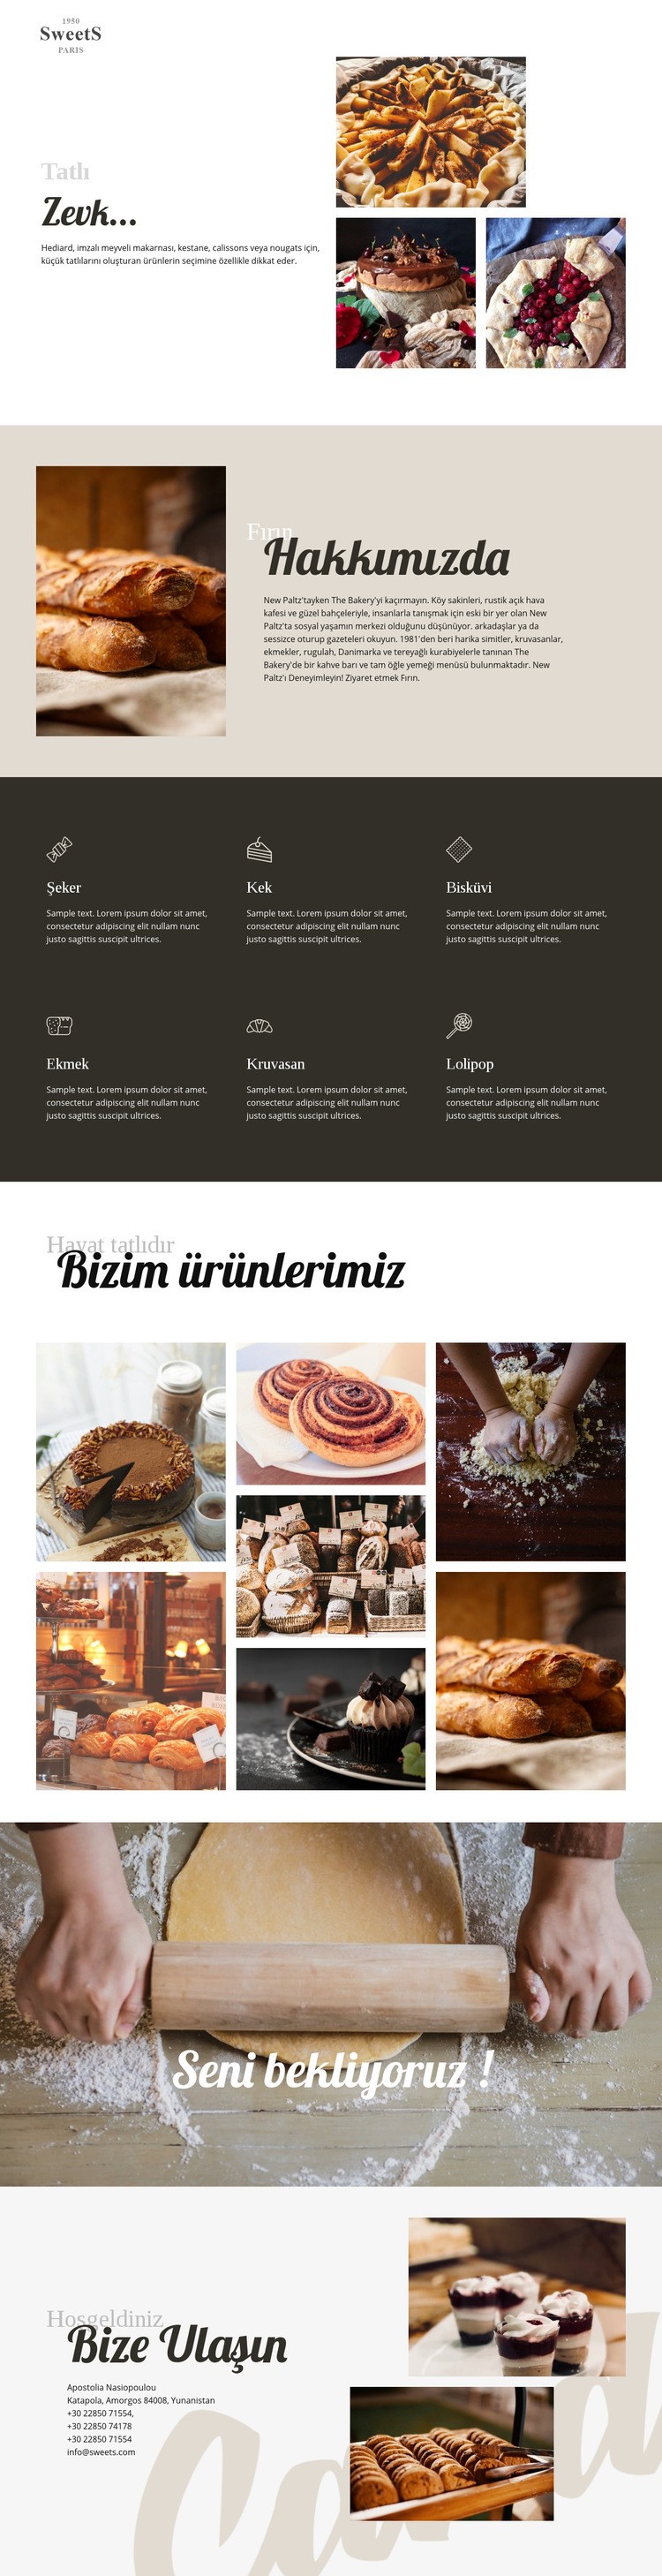 Pastalar ve pişirme yemekleri WordPress Teması